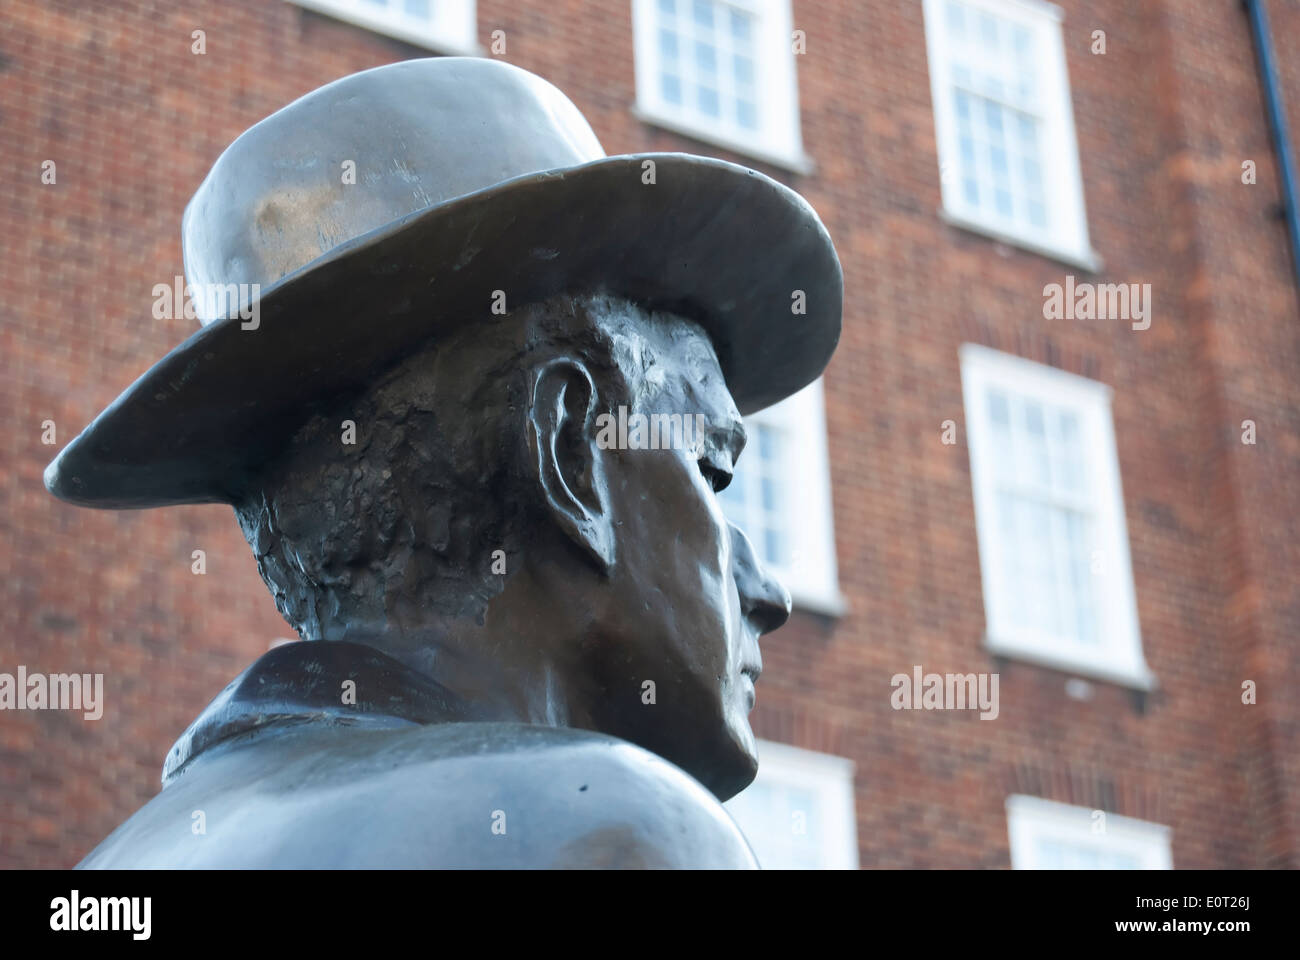 Dettaglio dello scultore Imre Varga della statua del compositore ungherese Bela Bartok, South Kensington, Londra, Inghilterra Foto Stock